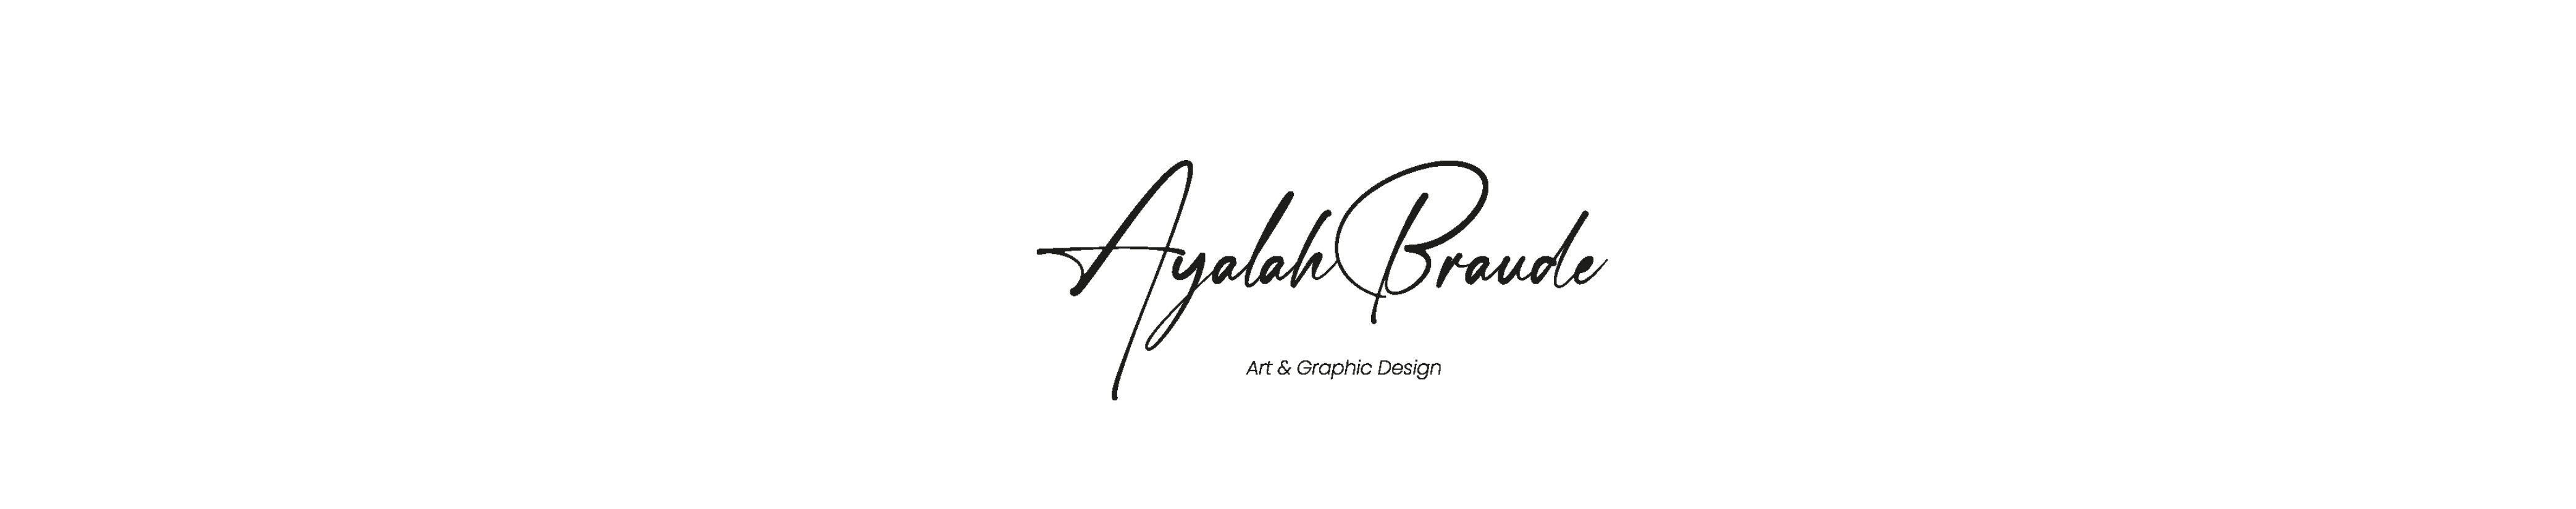 Ayalah Braude profil başlığı